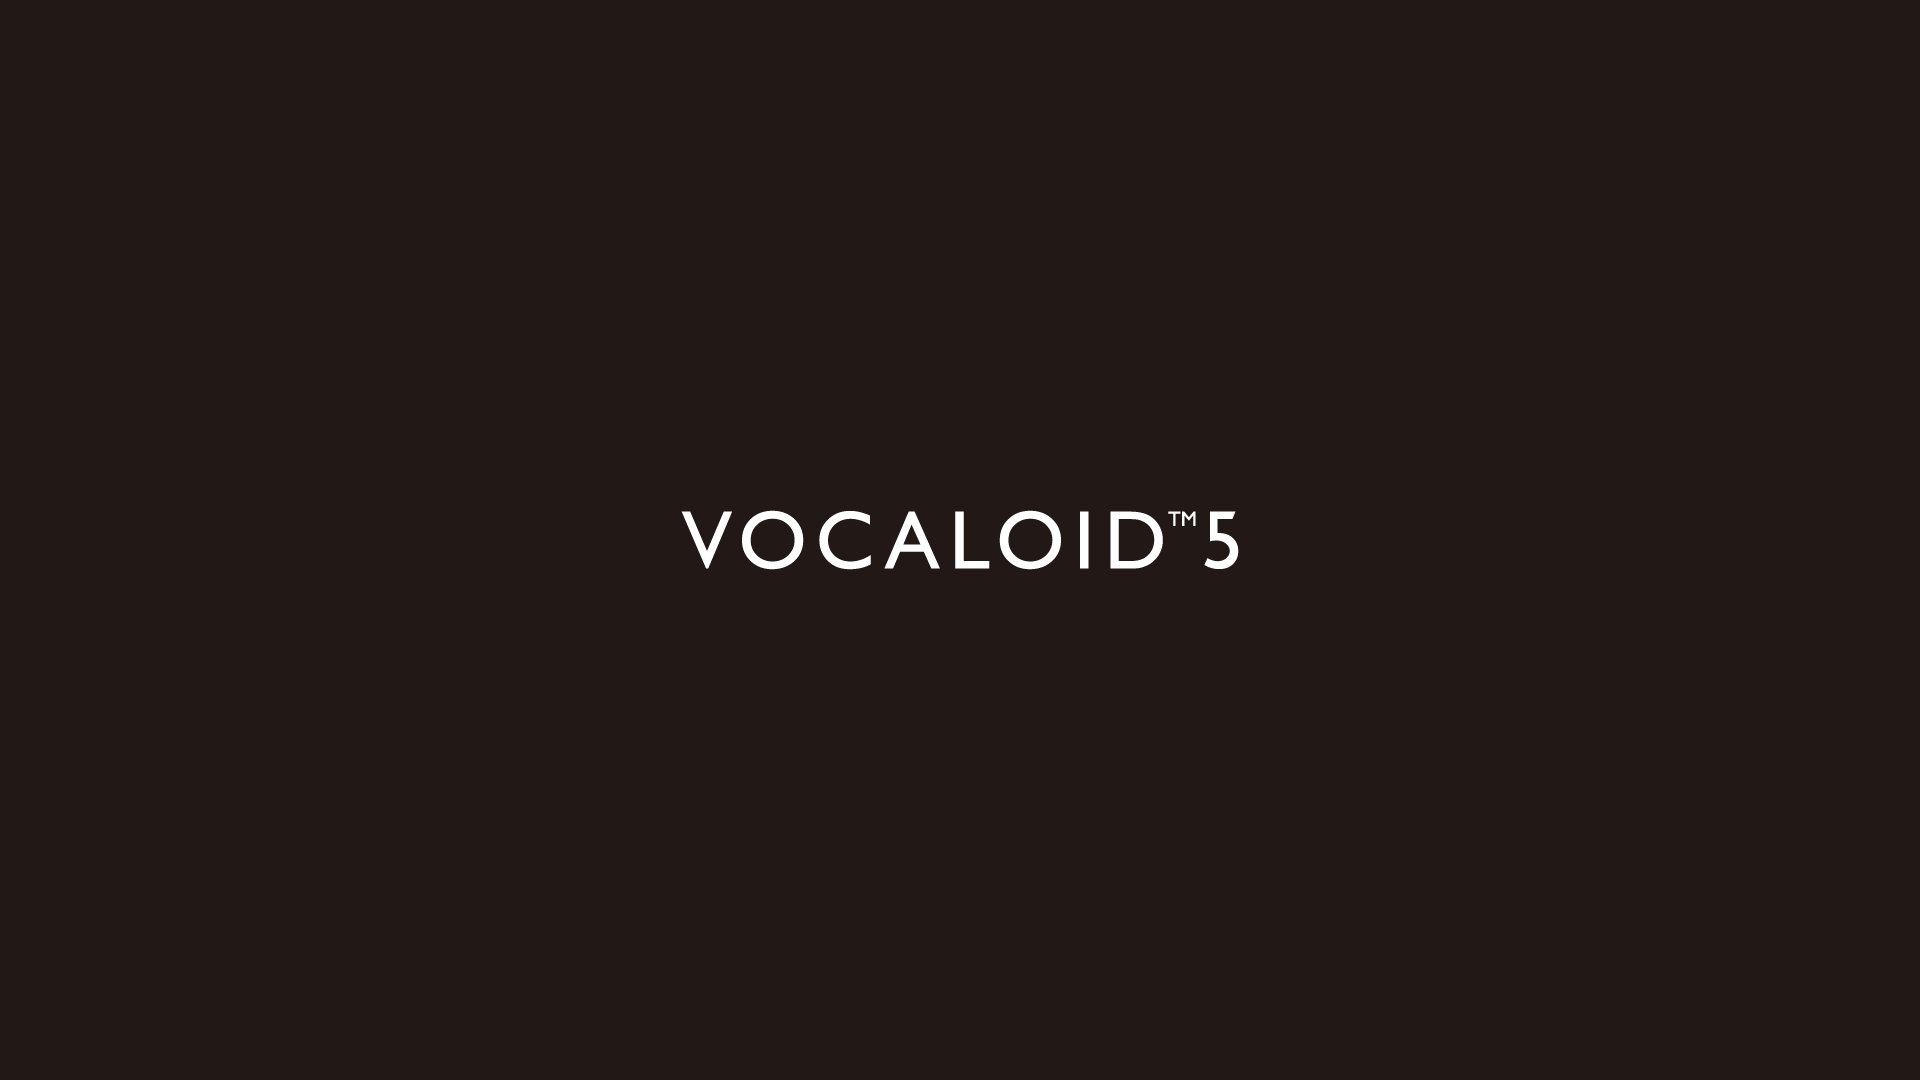 www.vocaloid.com